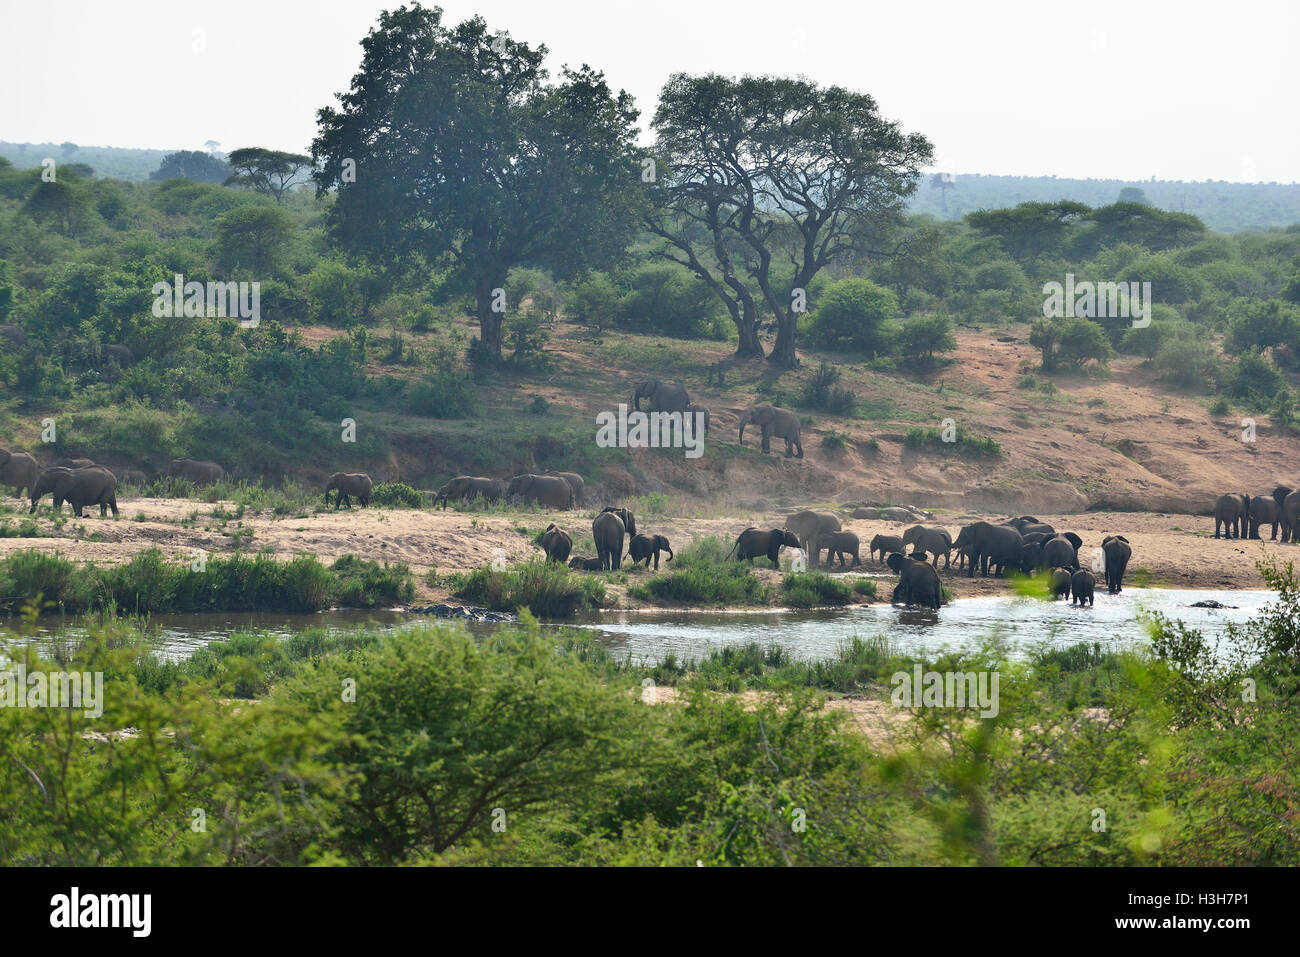 Mandria di elefanti (fino a 52 contati) che attraversano una bassa traversata d'acqua sul fiume Sabie, Kruger National Park, Sudafrica Foto Stock